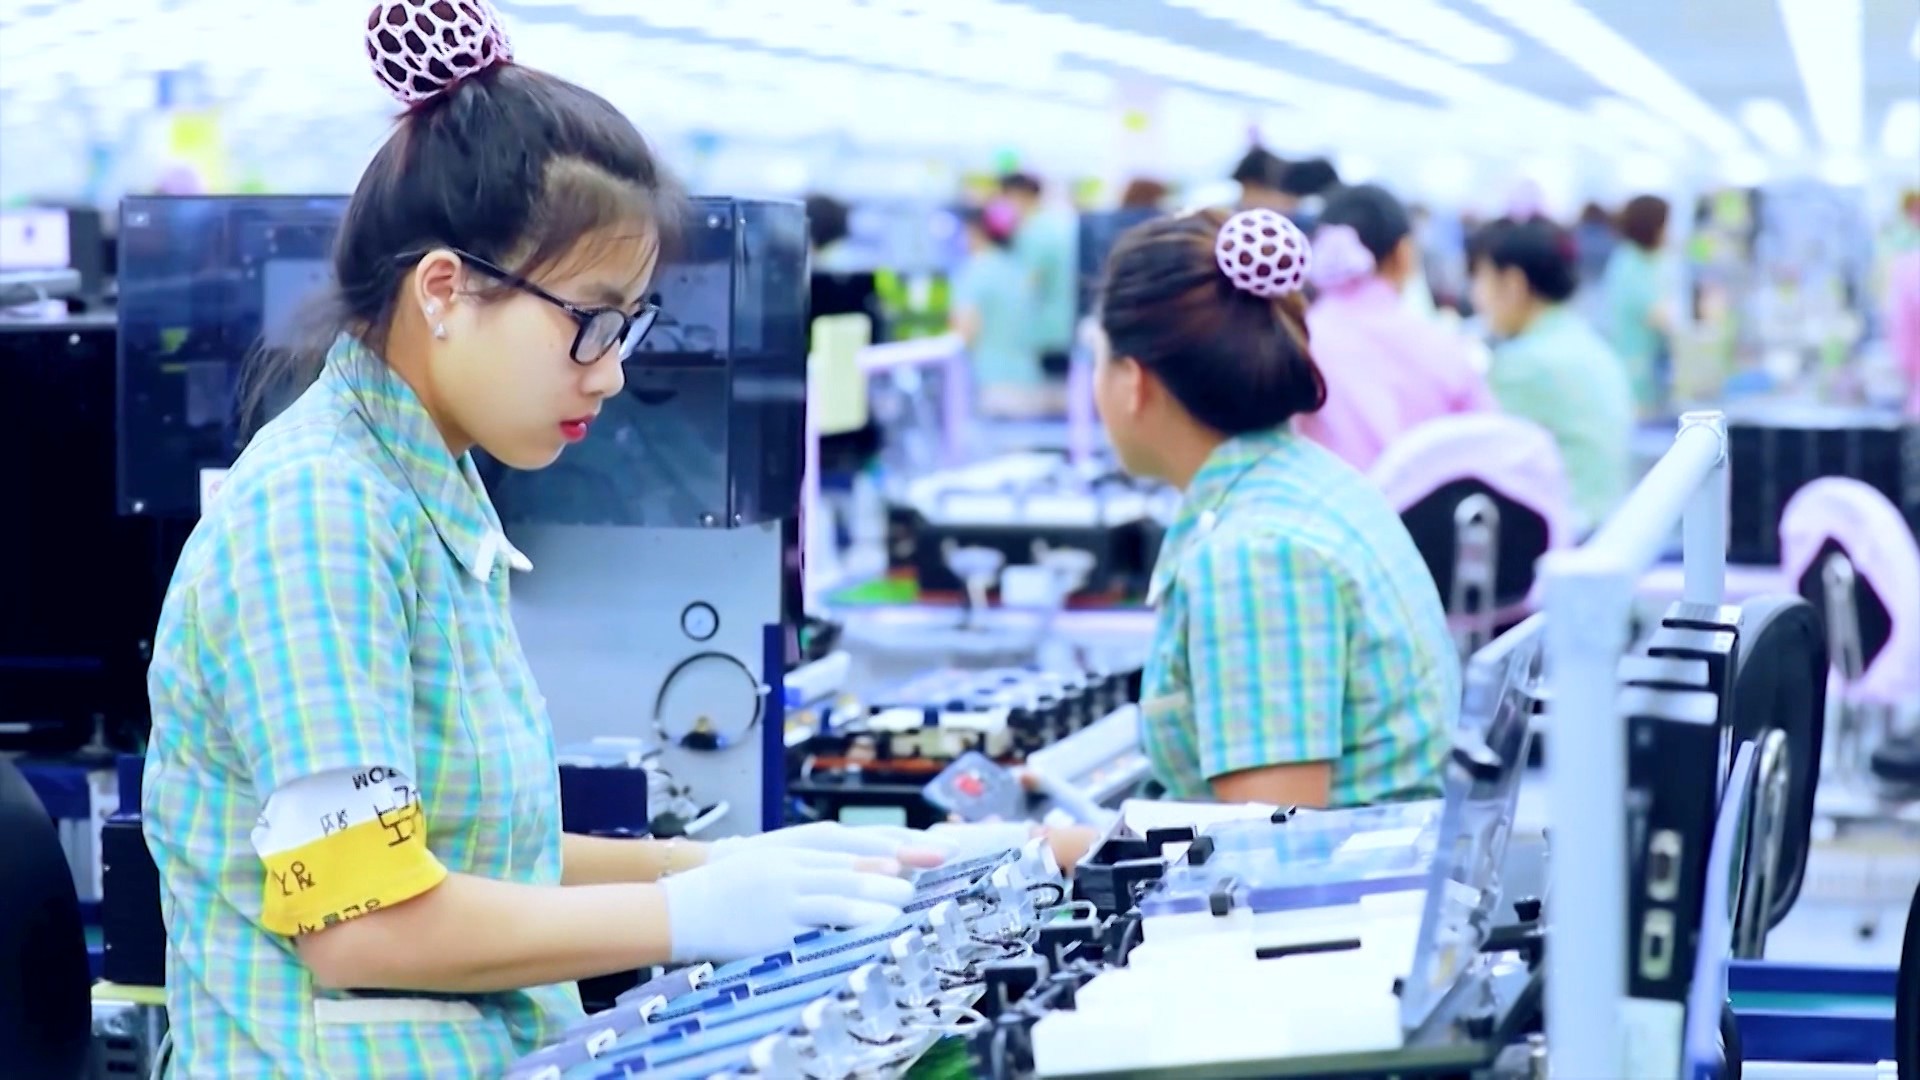 
Người lao động đến làm việc tại Thái Nguyên ngày càng tăng
